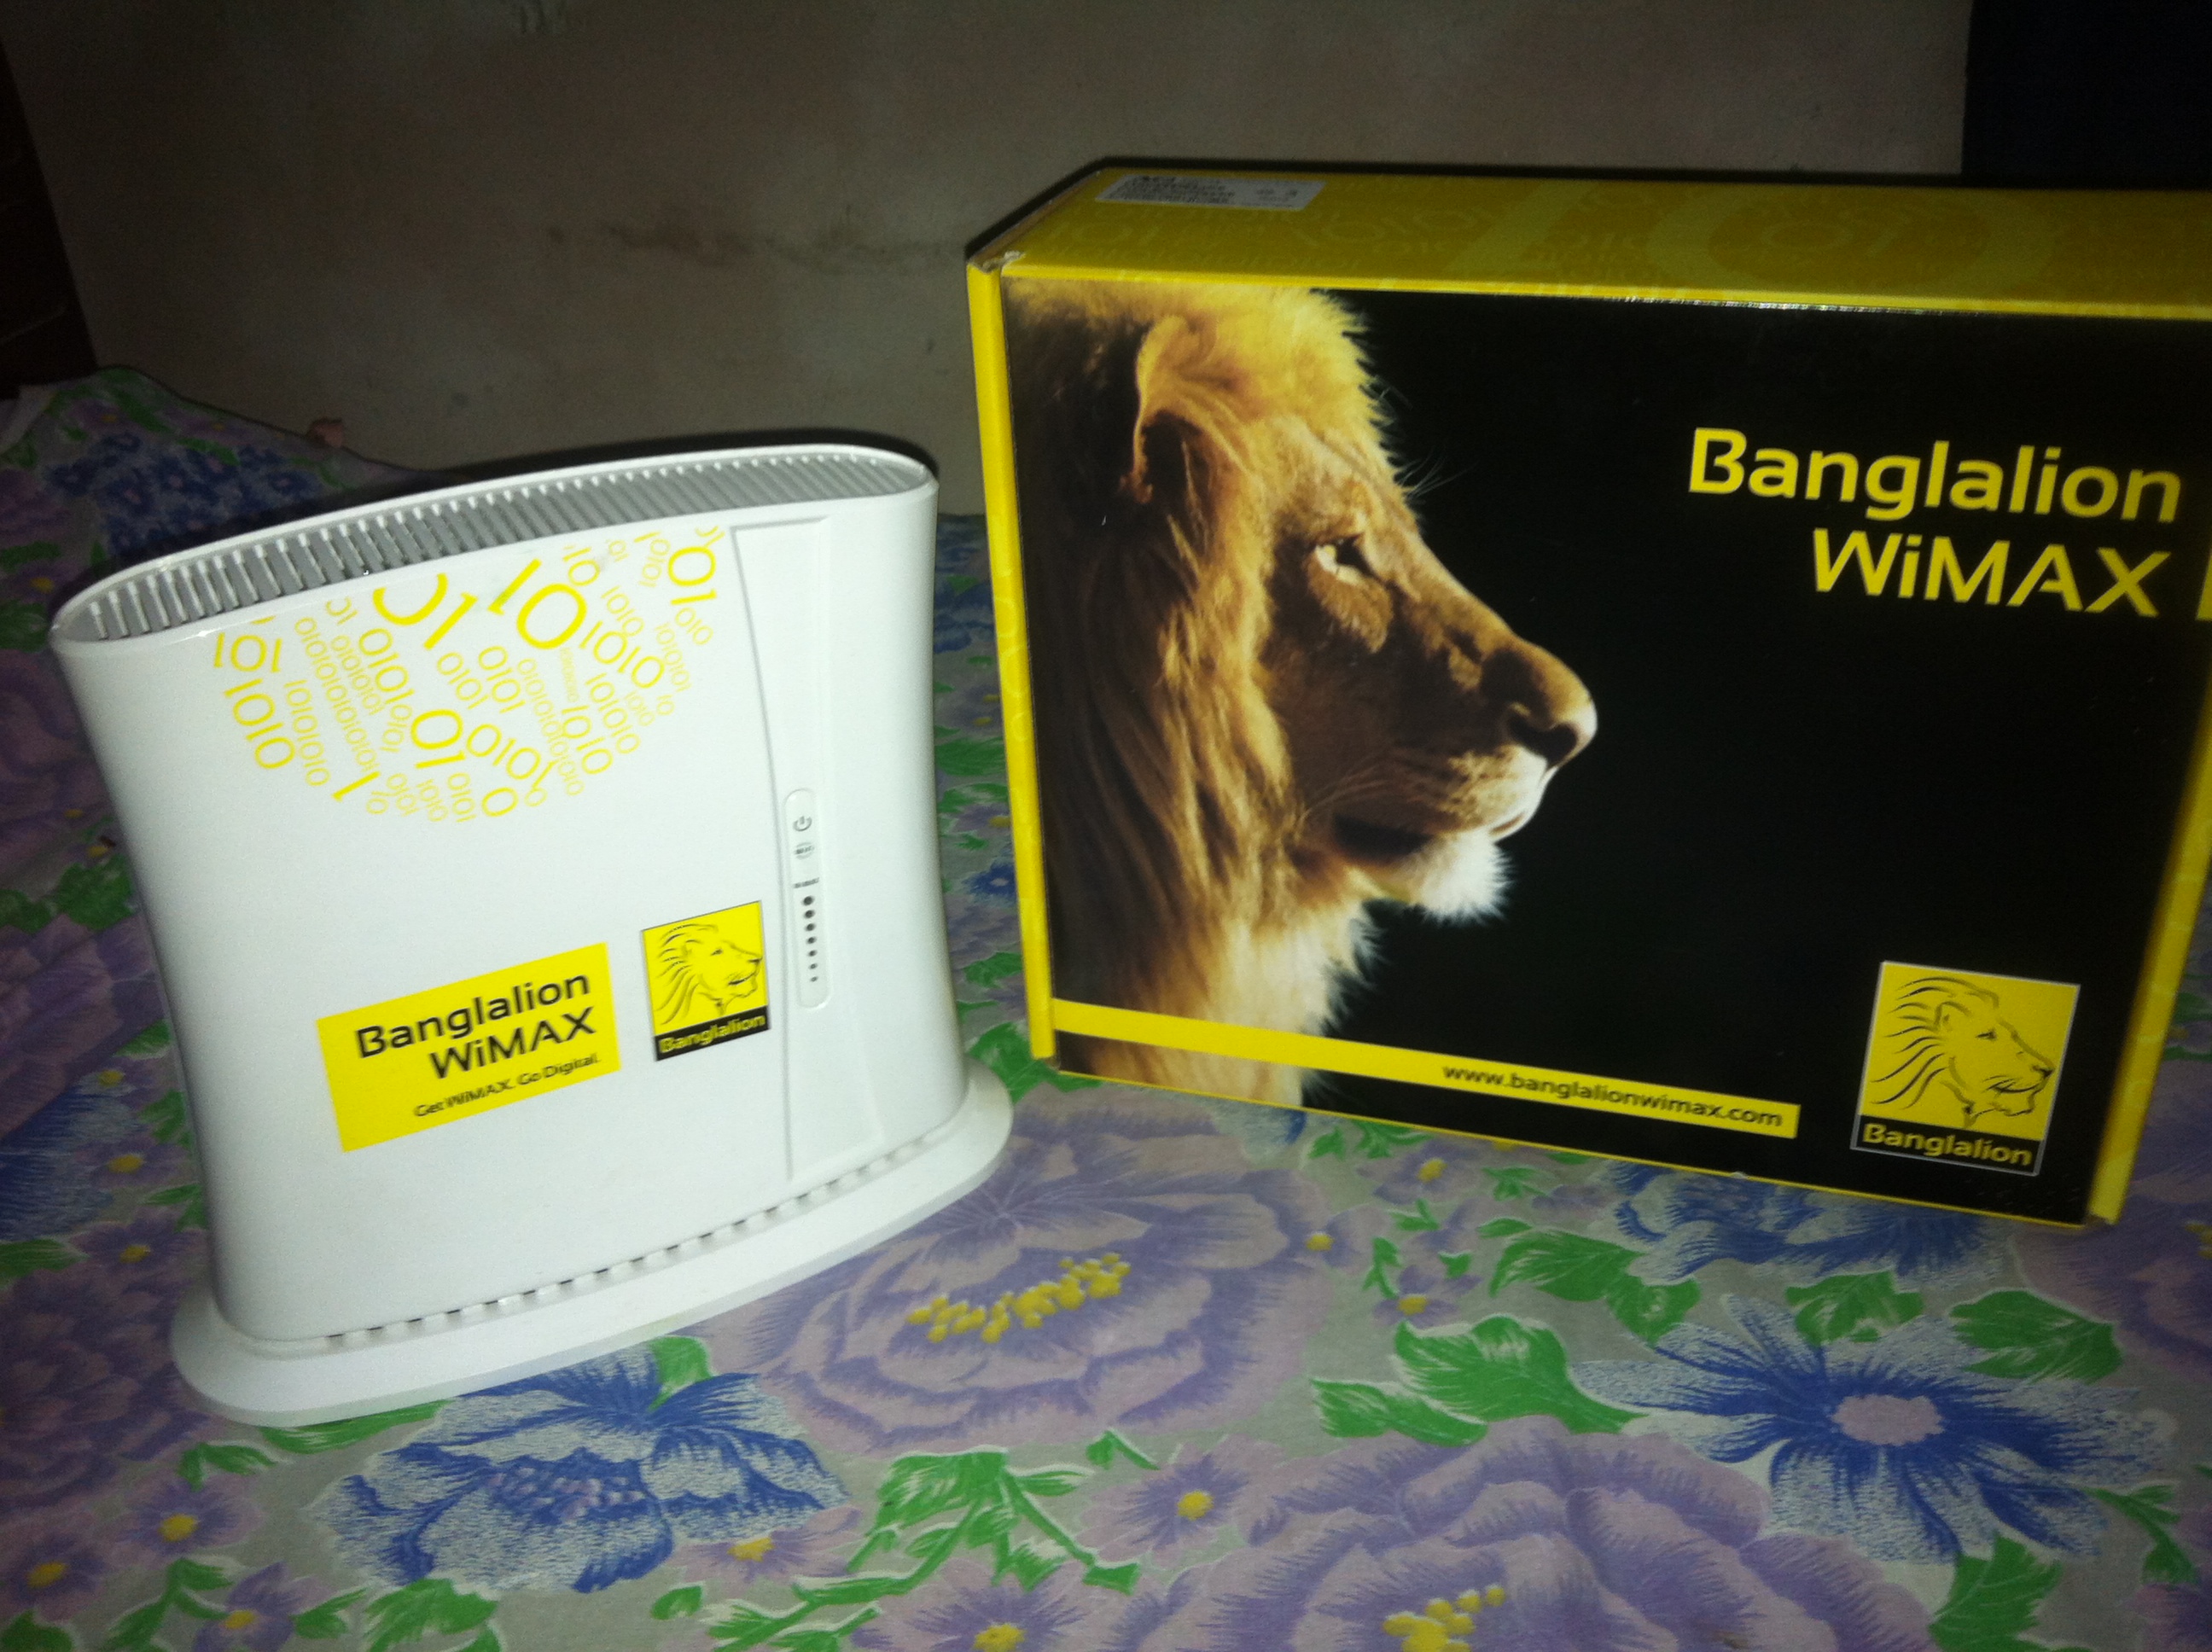 Banglalion indoor wifi nodem full box with guarantee  large image 0